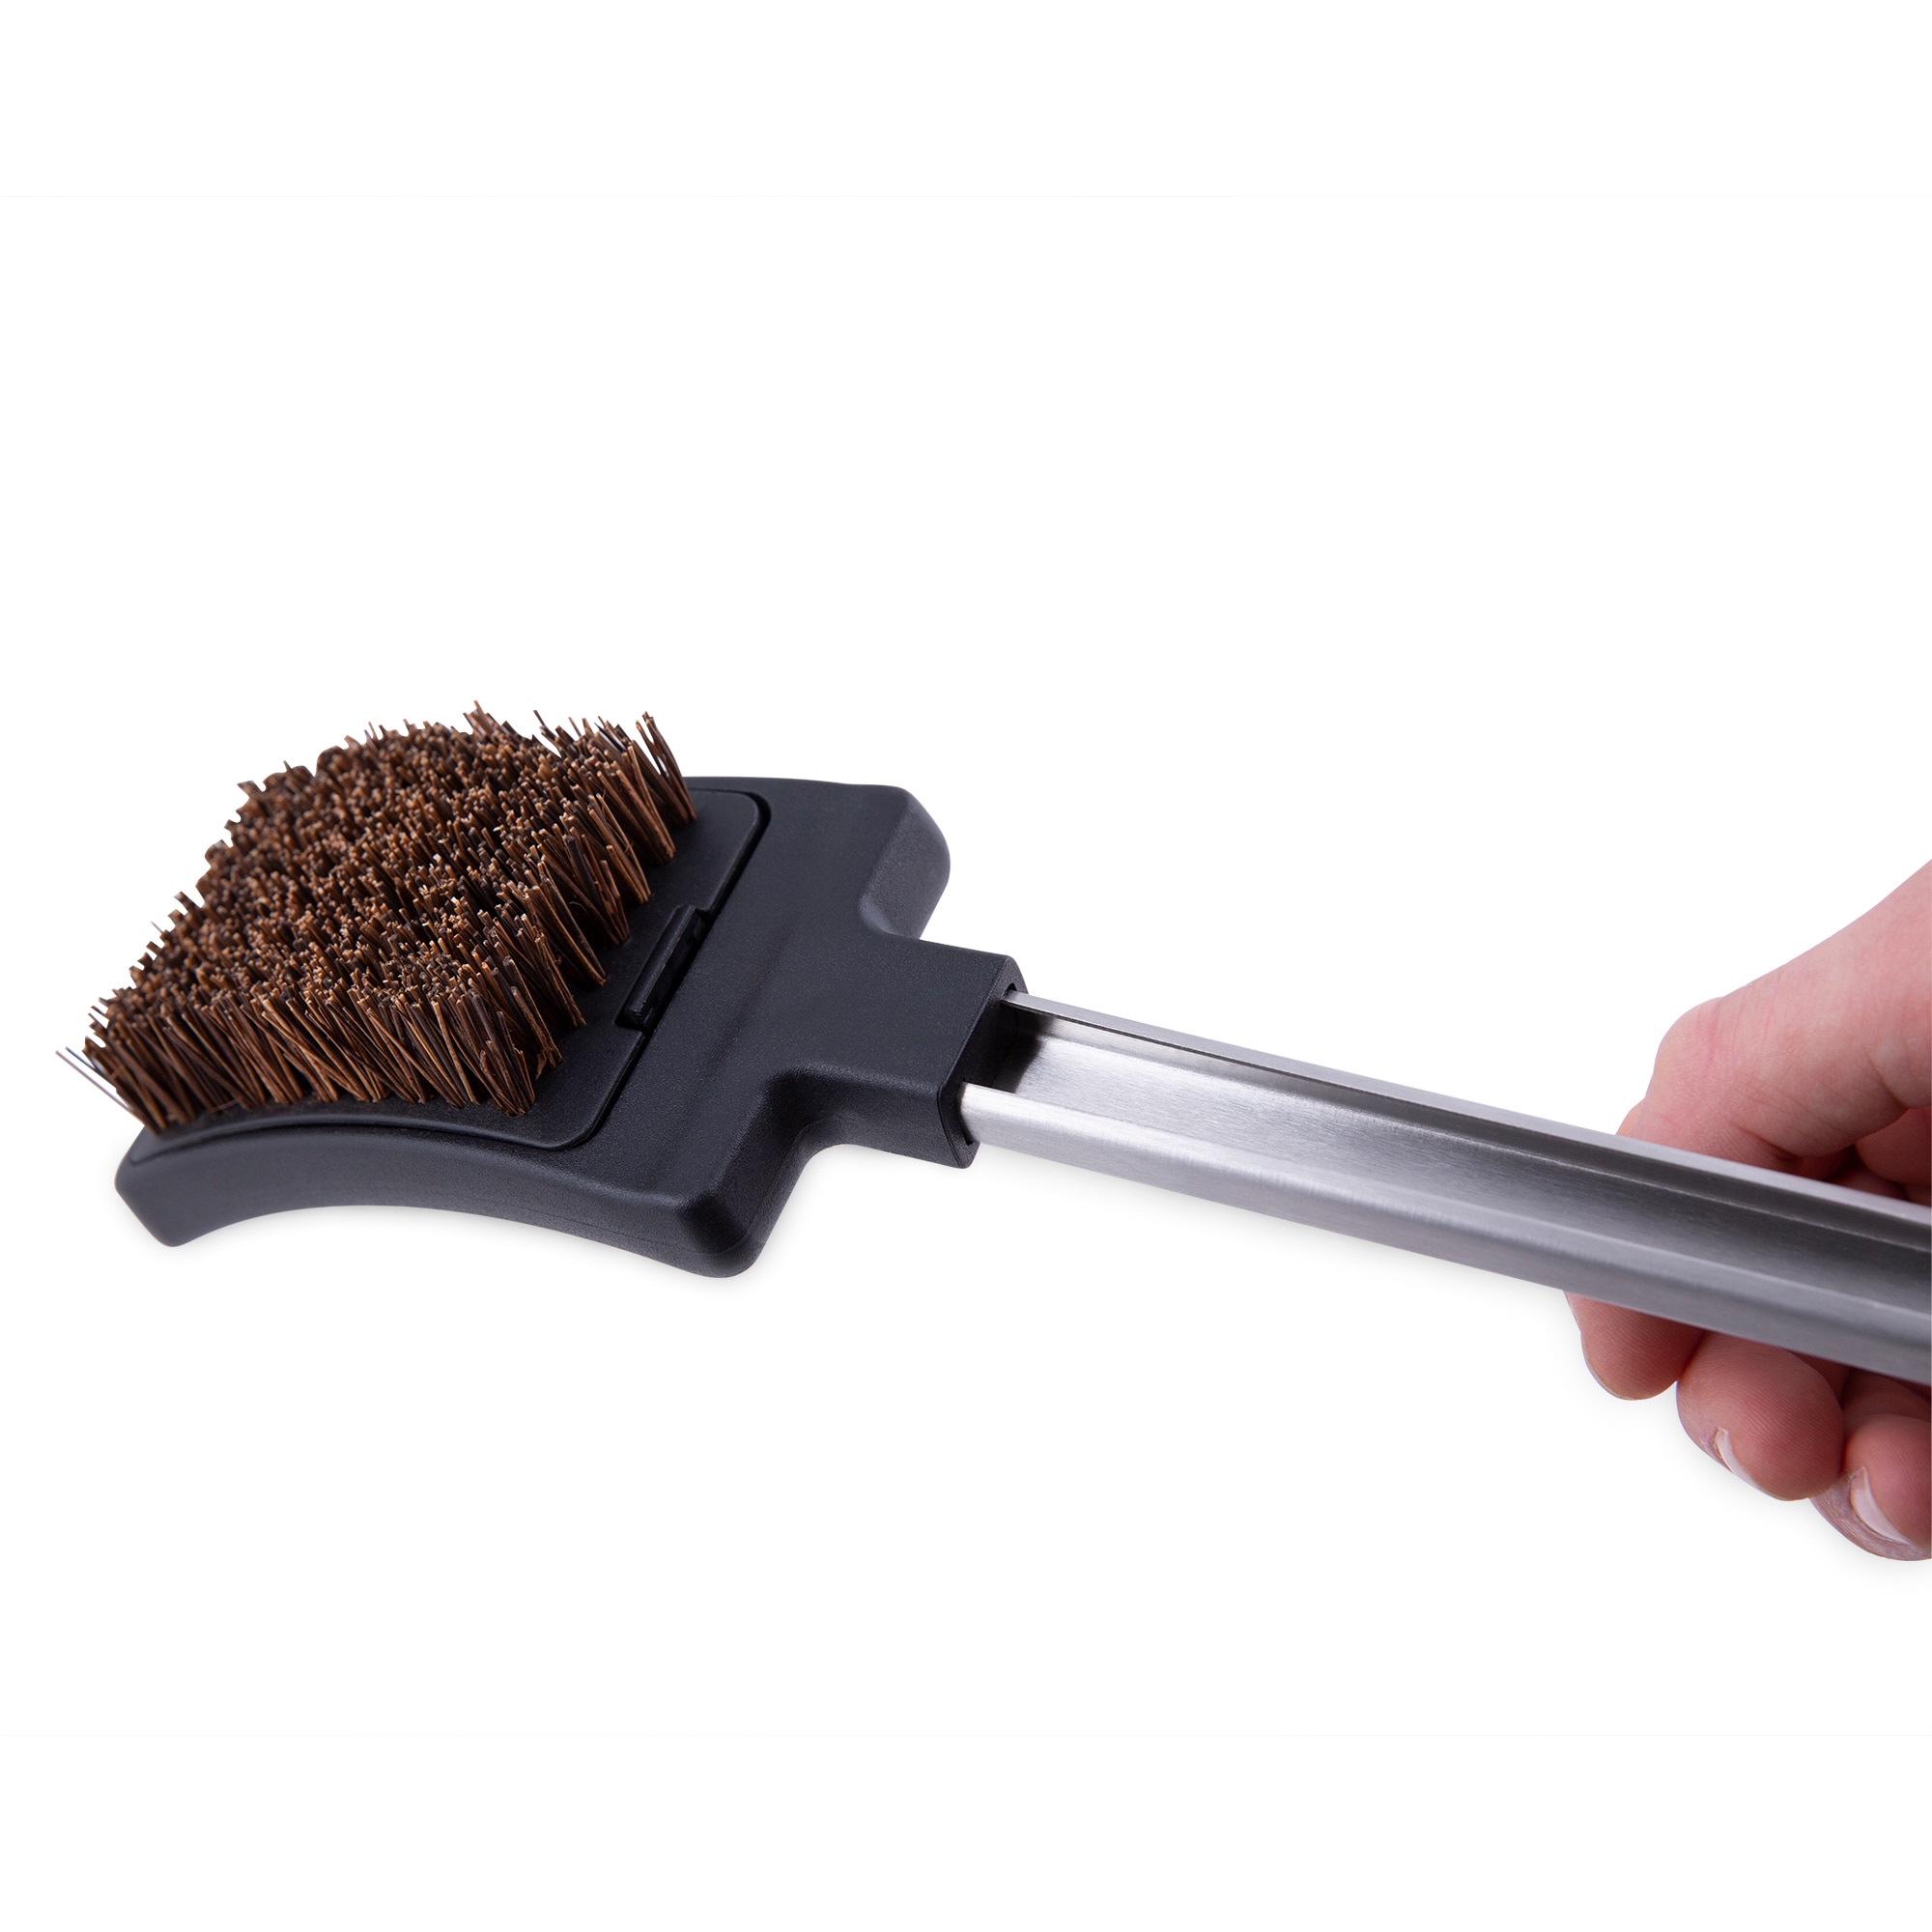 Everdure HBCBPDQ Multi-Purpose Grill Cleaning Brush with Coconut Fiber